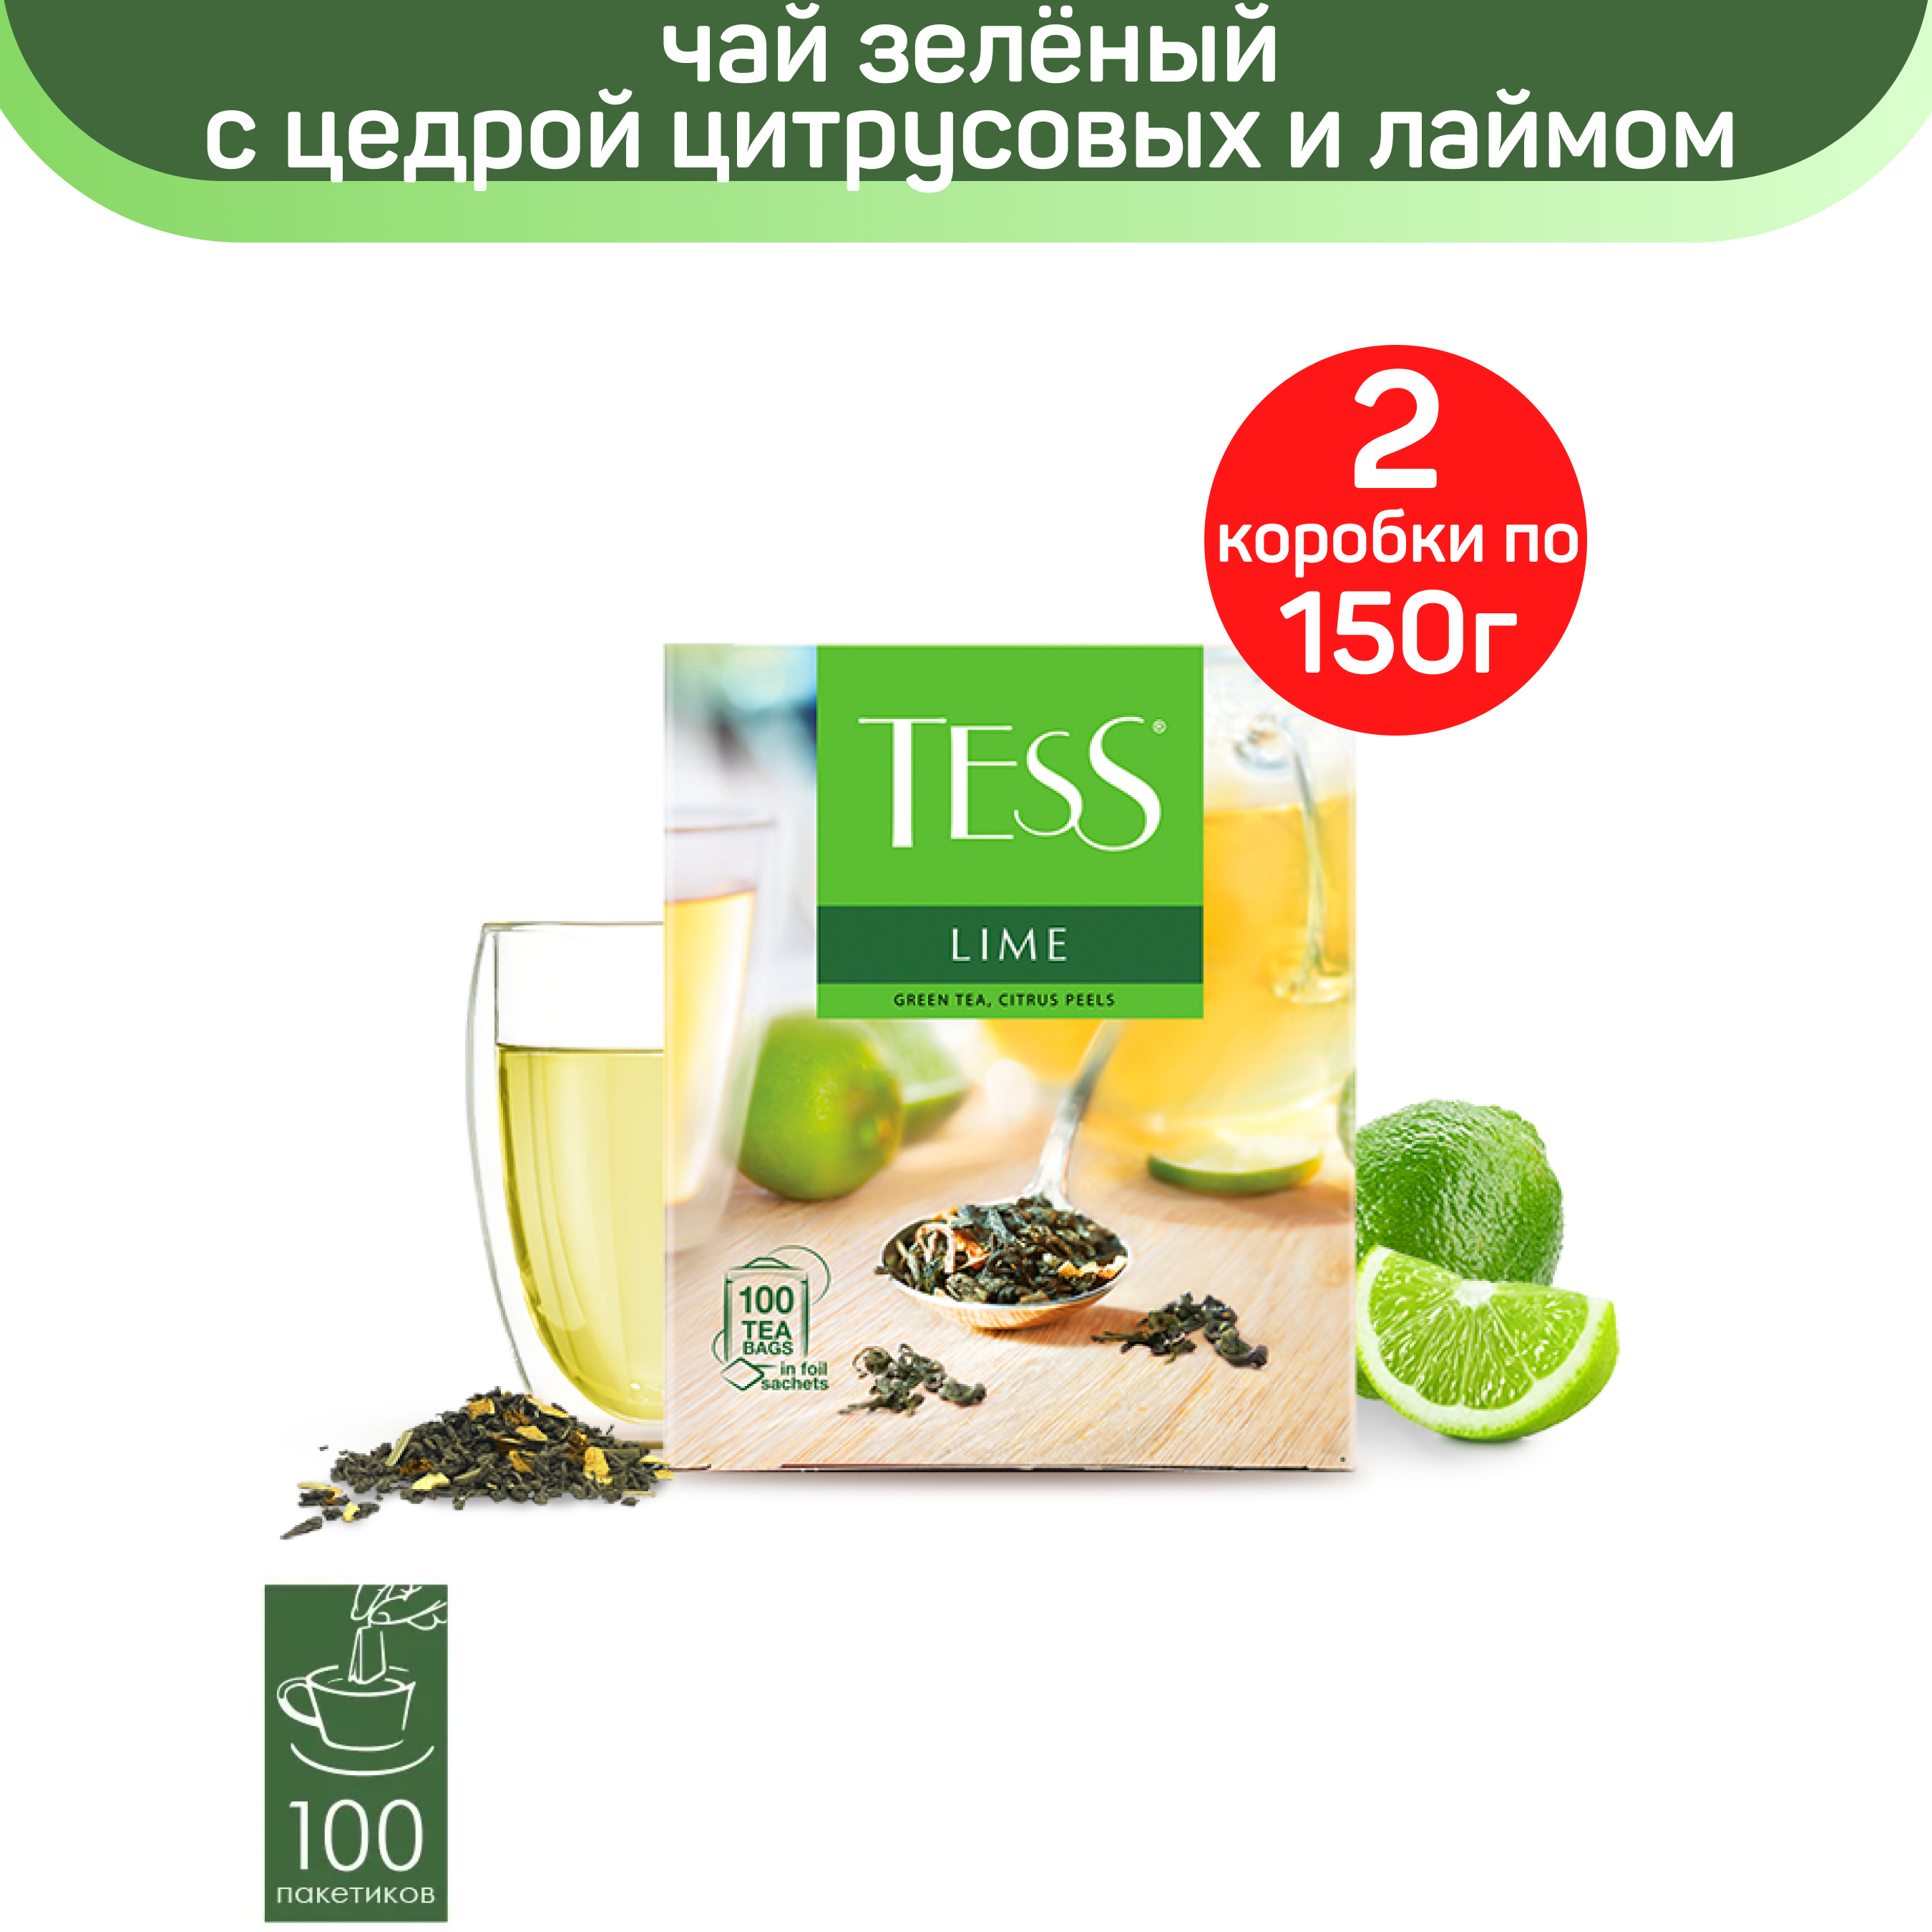 Чай зеленый Tess Lime, с цедрой цитрусовых и ароматом лайма, 2 шт по 100 пакетиков